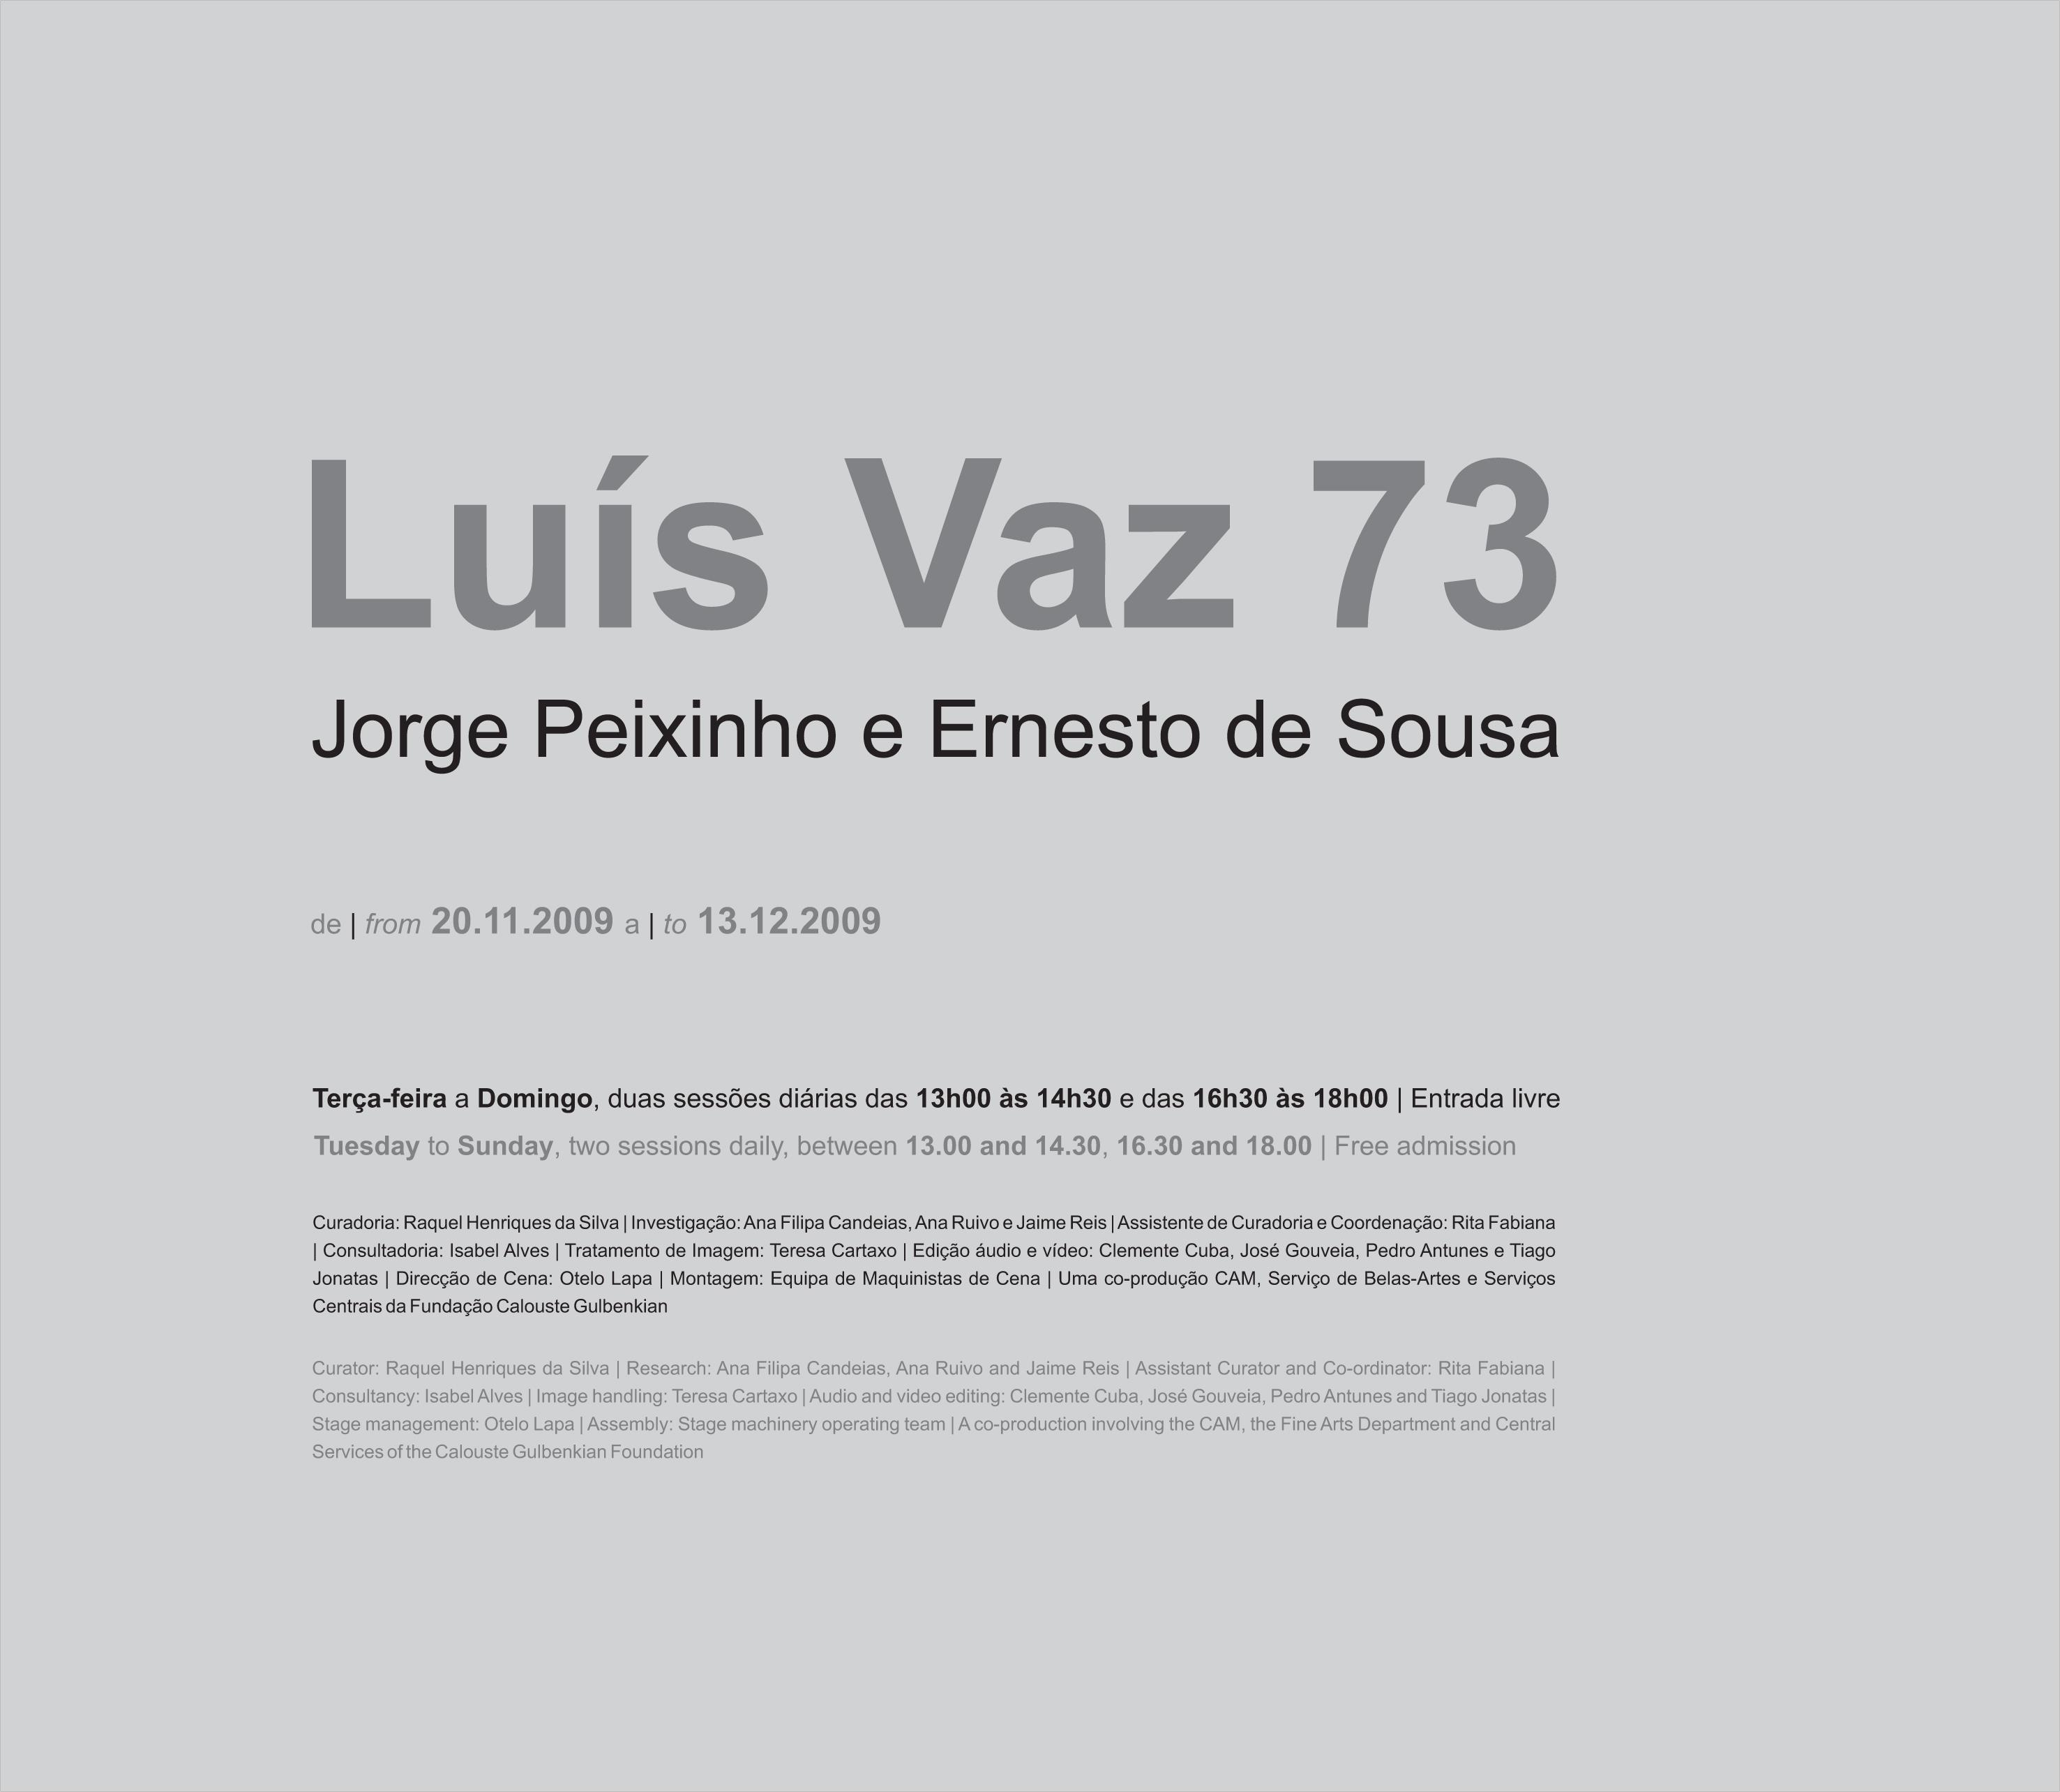 Luiz Vaz 73. Jorge Peixinho e Ernesto de Sousa